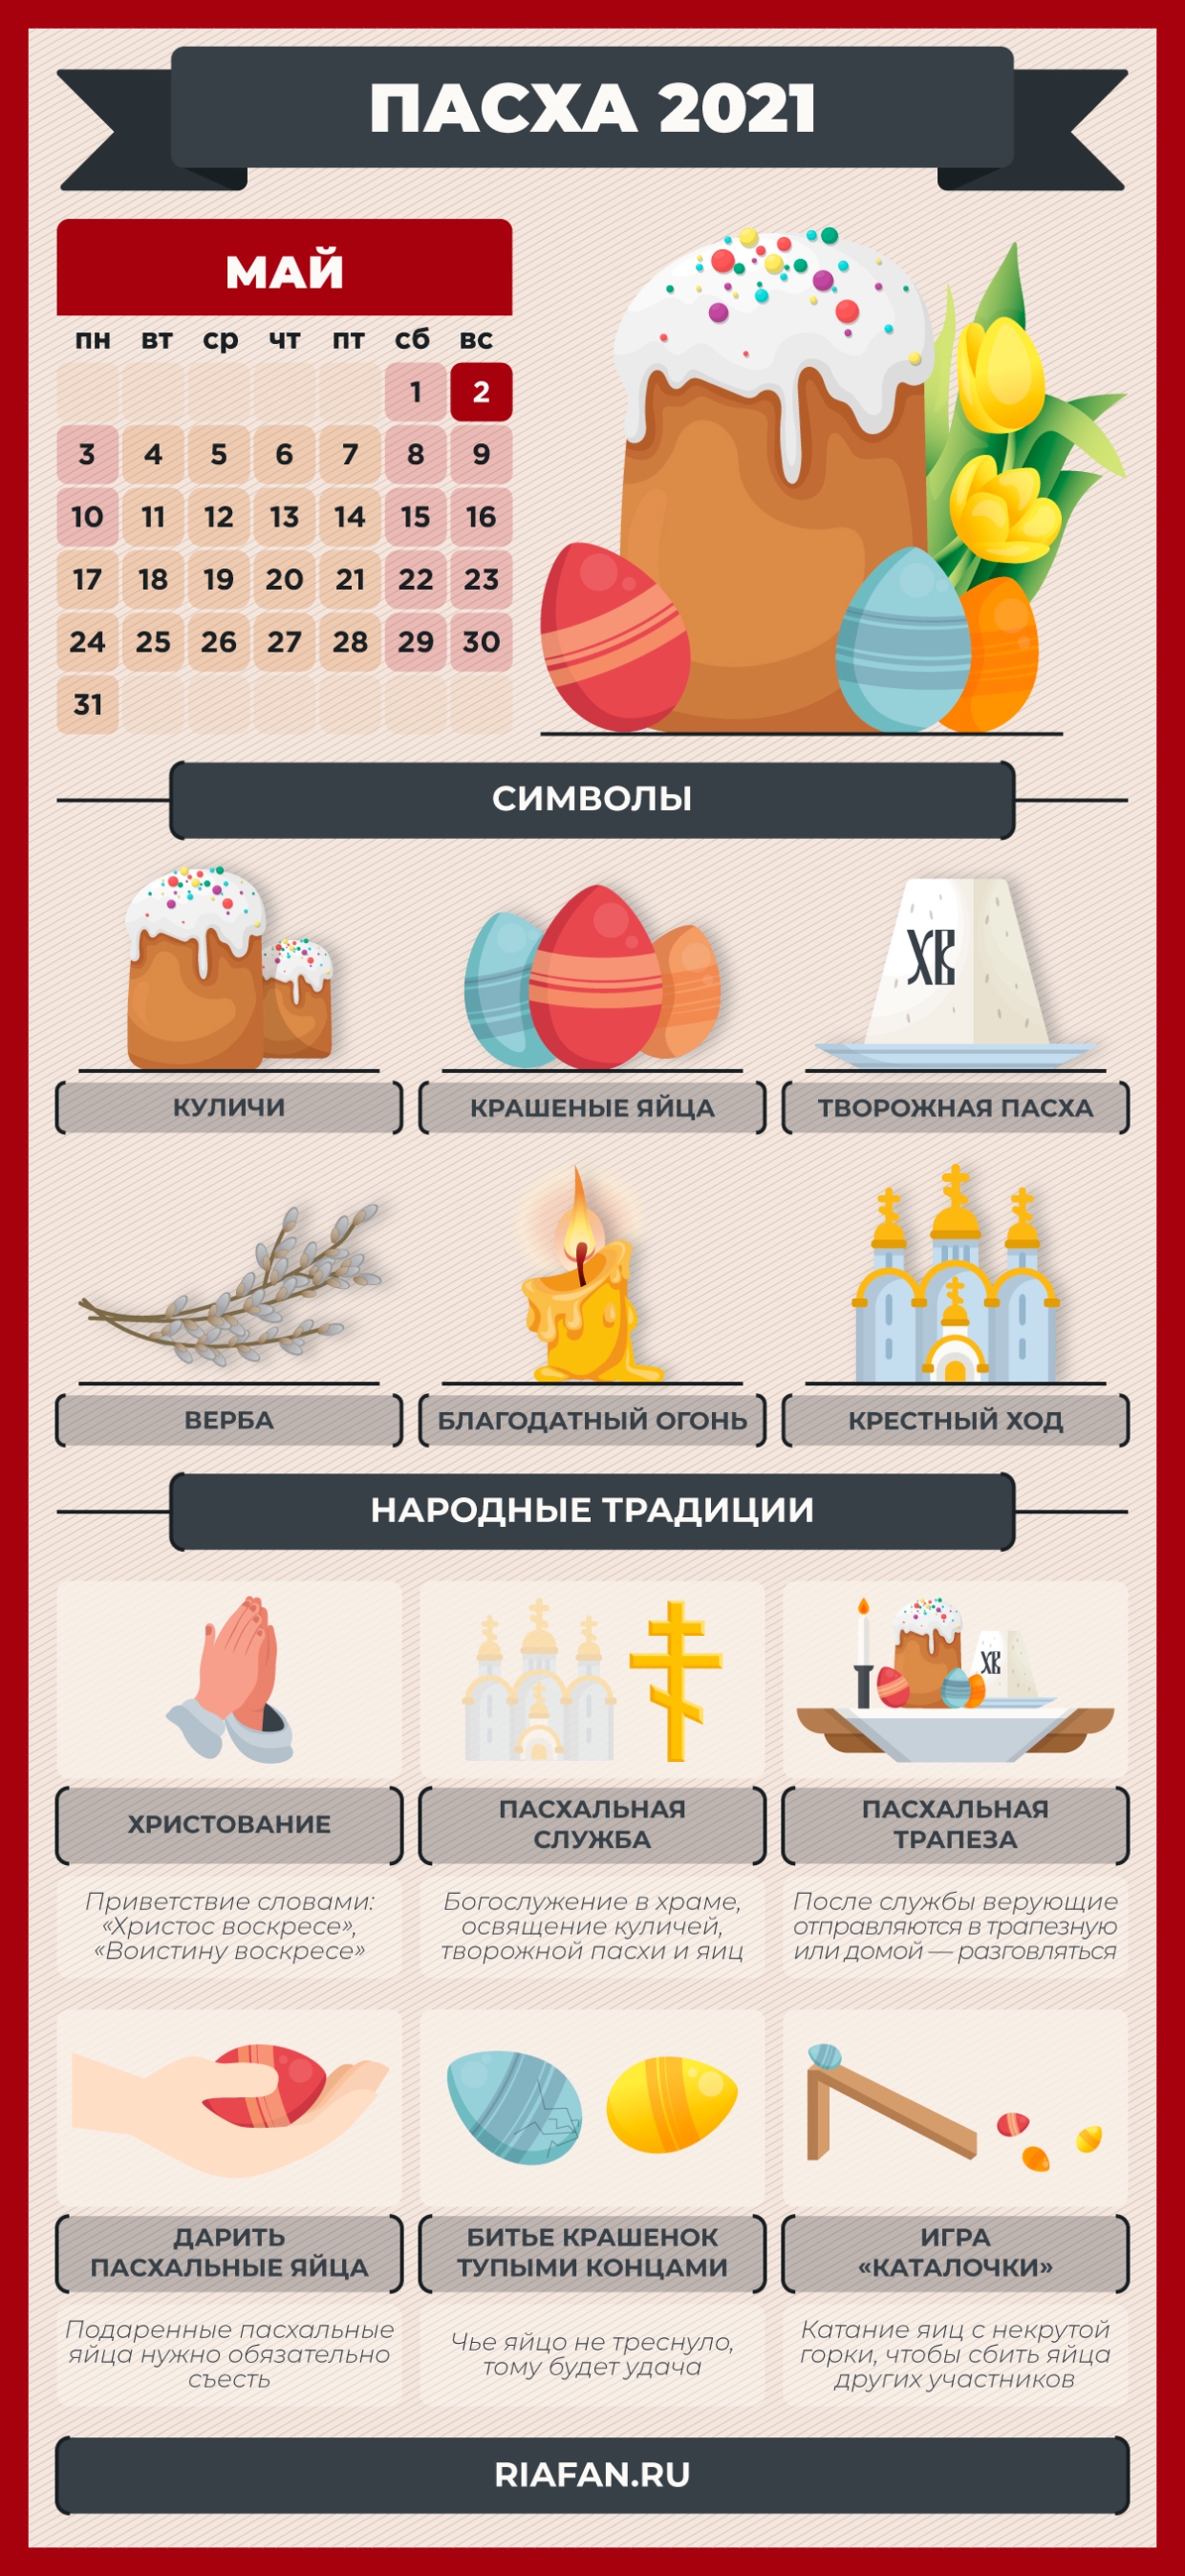 В инфографике ФАН отражены некоторые народные традиции, связанные с Пасхой